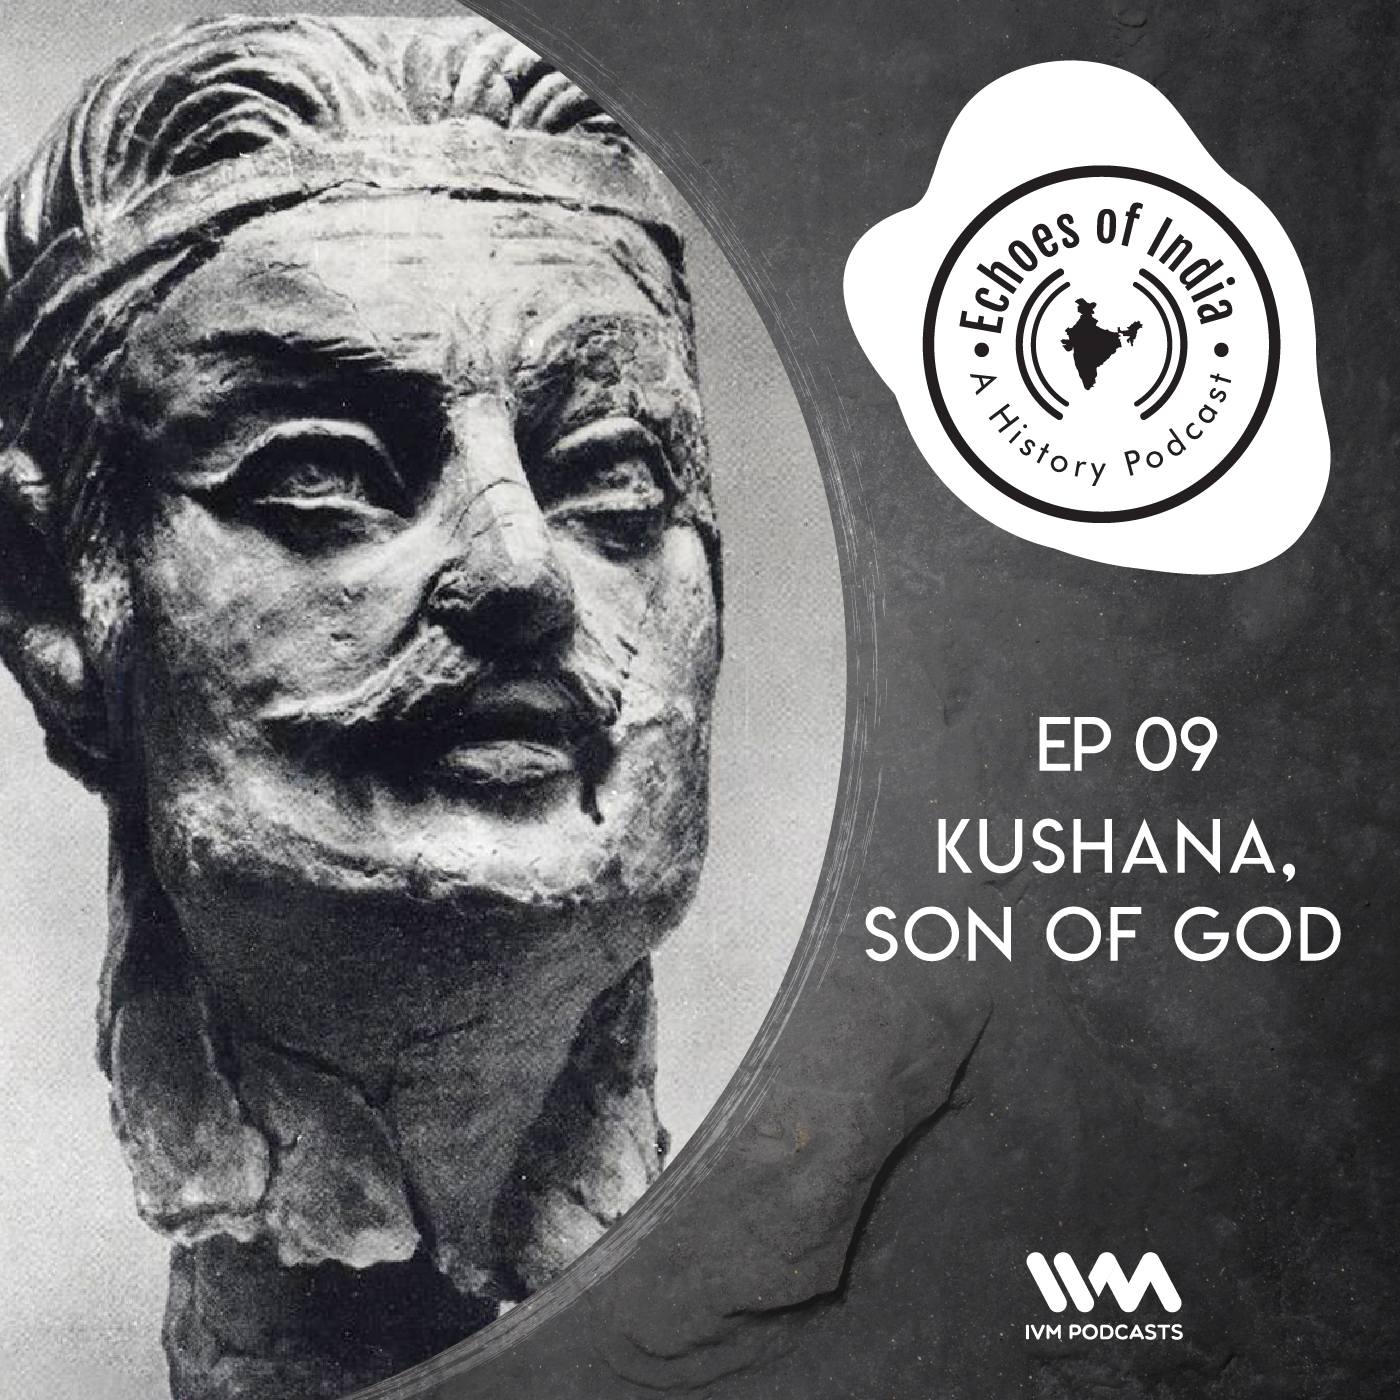 Kushana, Son of God